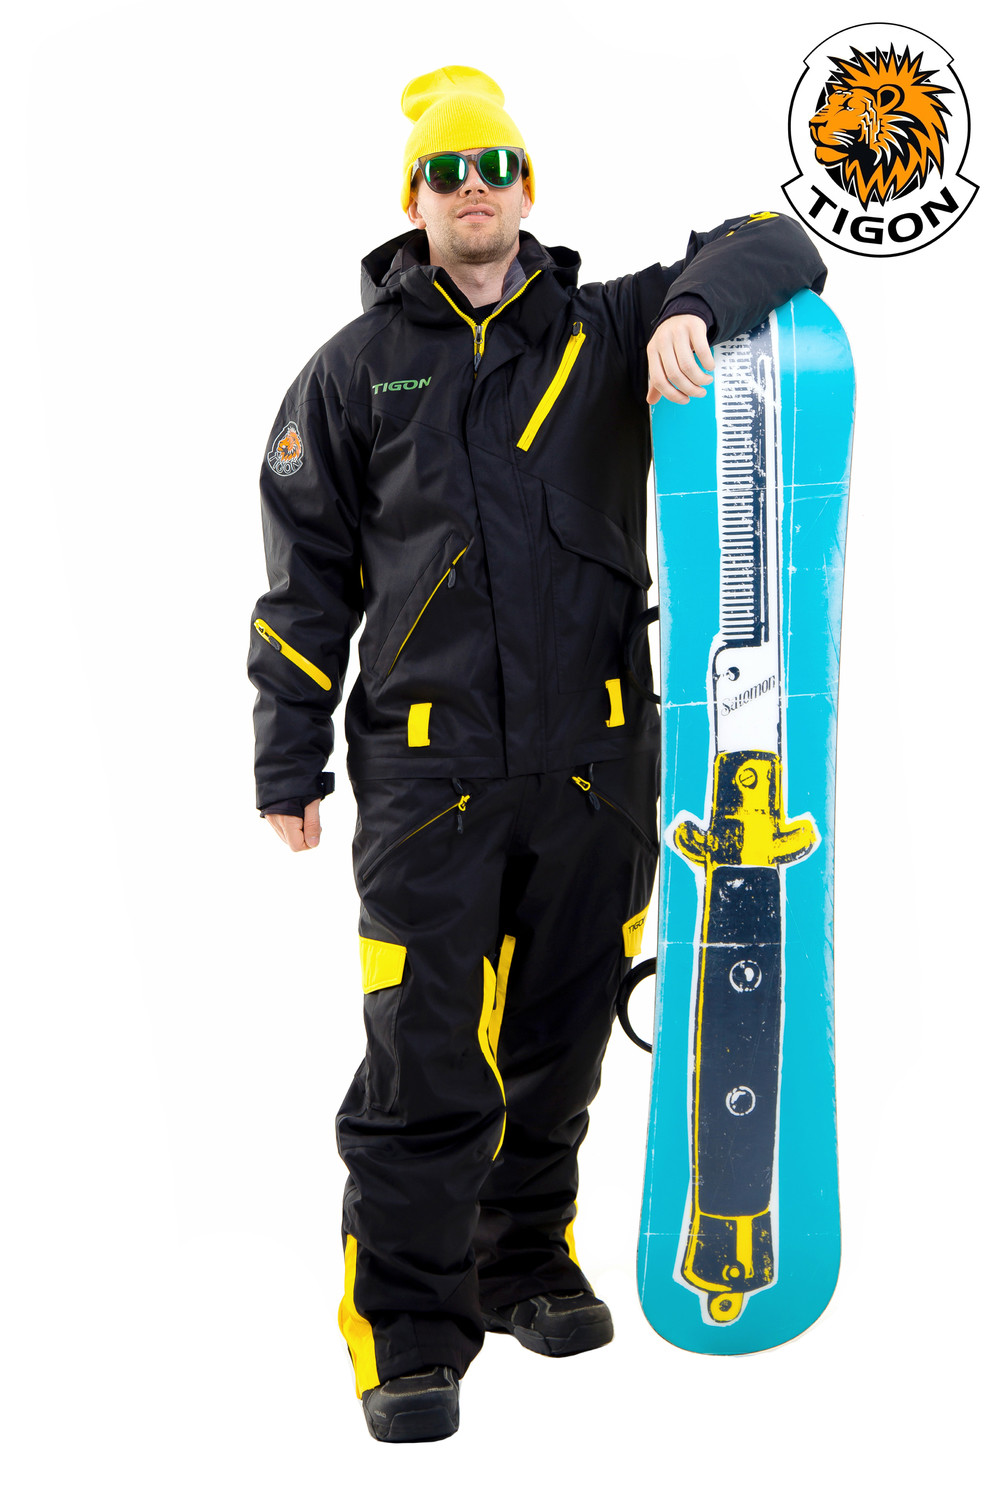 Men's one piece ski suit 1916 - Webshop Snow-point.com. One piece suits ...